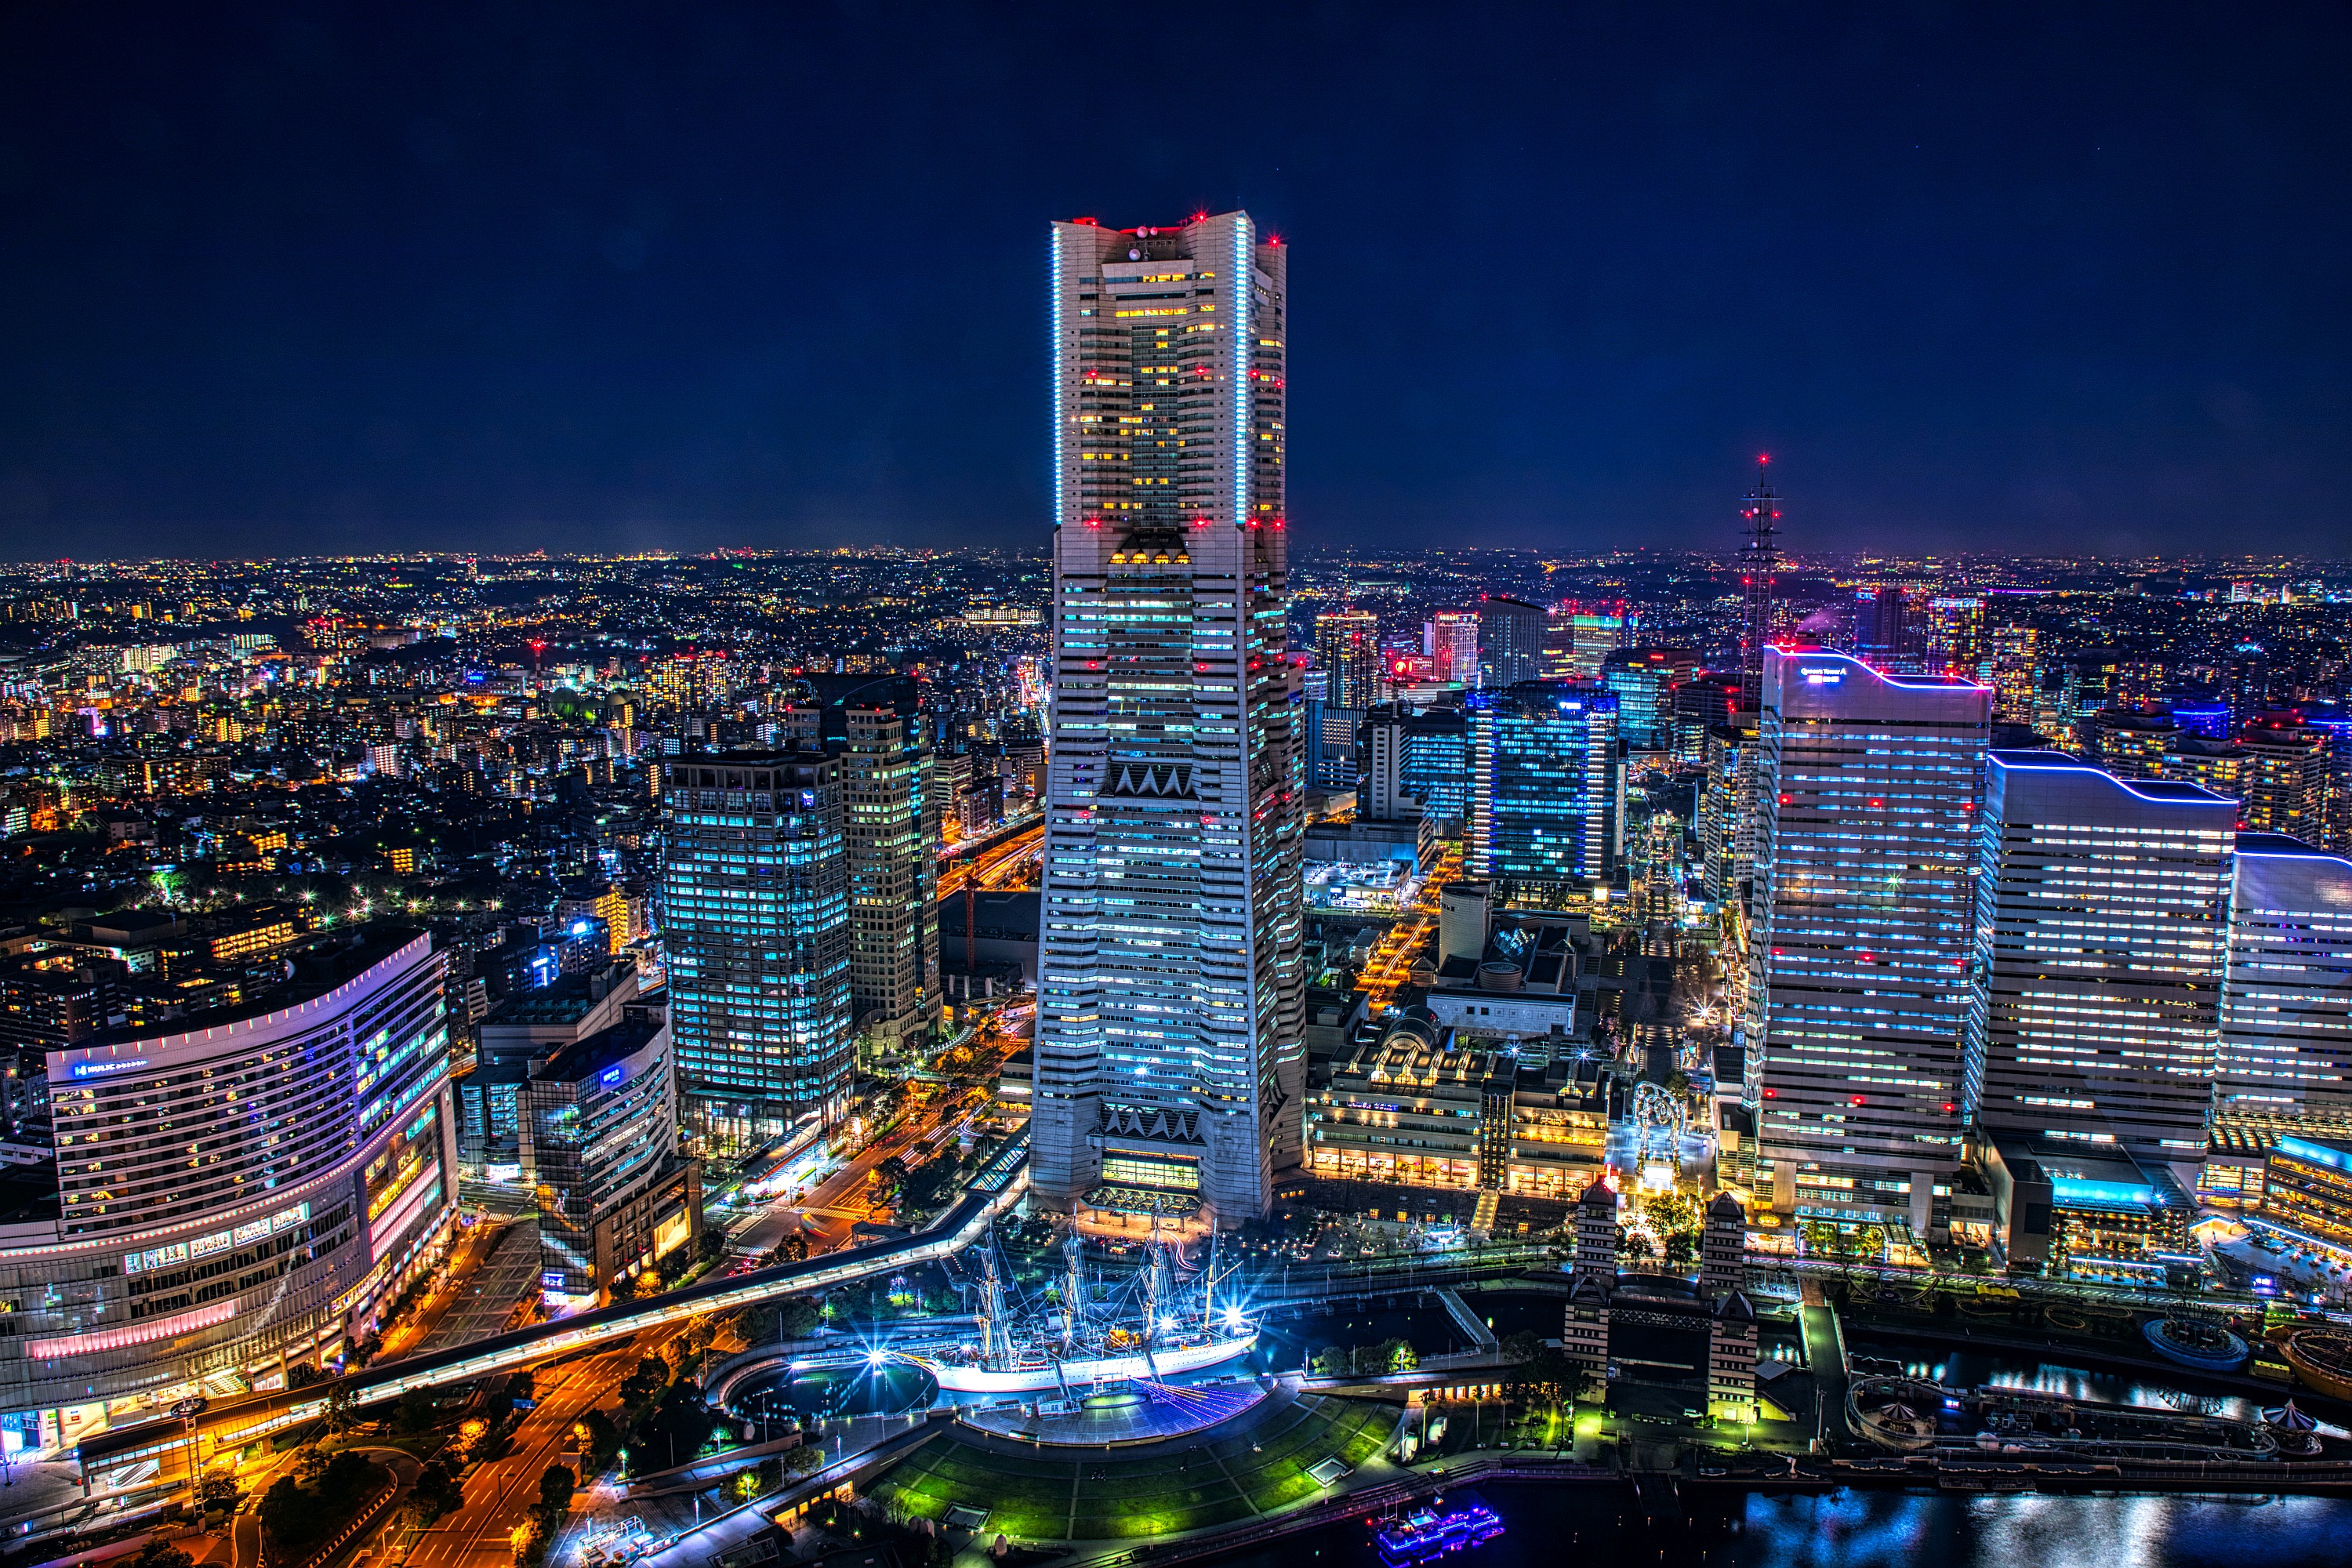 地上58階 高さ約0mタワマン ザ タワー 横浜北仲 屋上スカイテラスからの夜景とパーティルームなどの様子 超高層マンション 超高層ビル